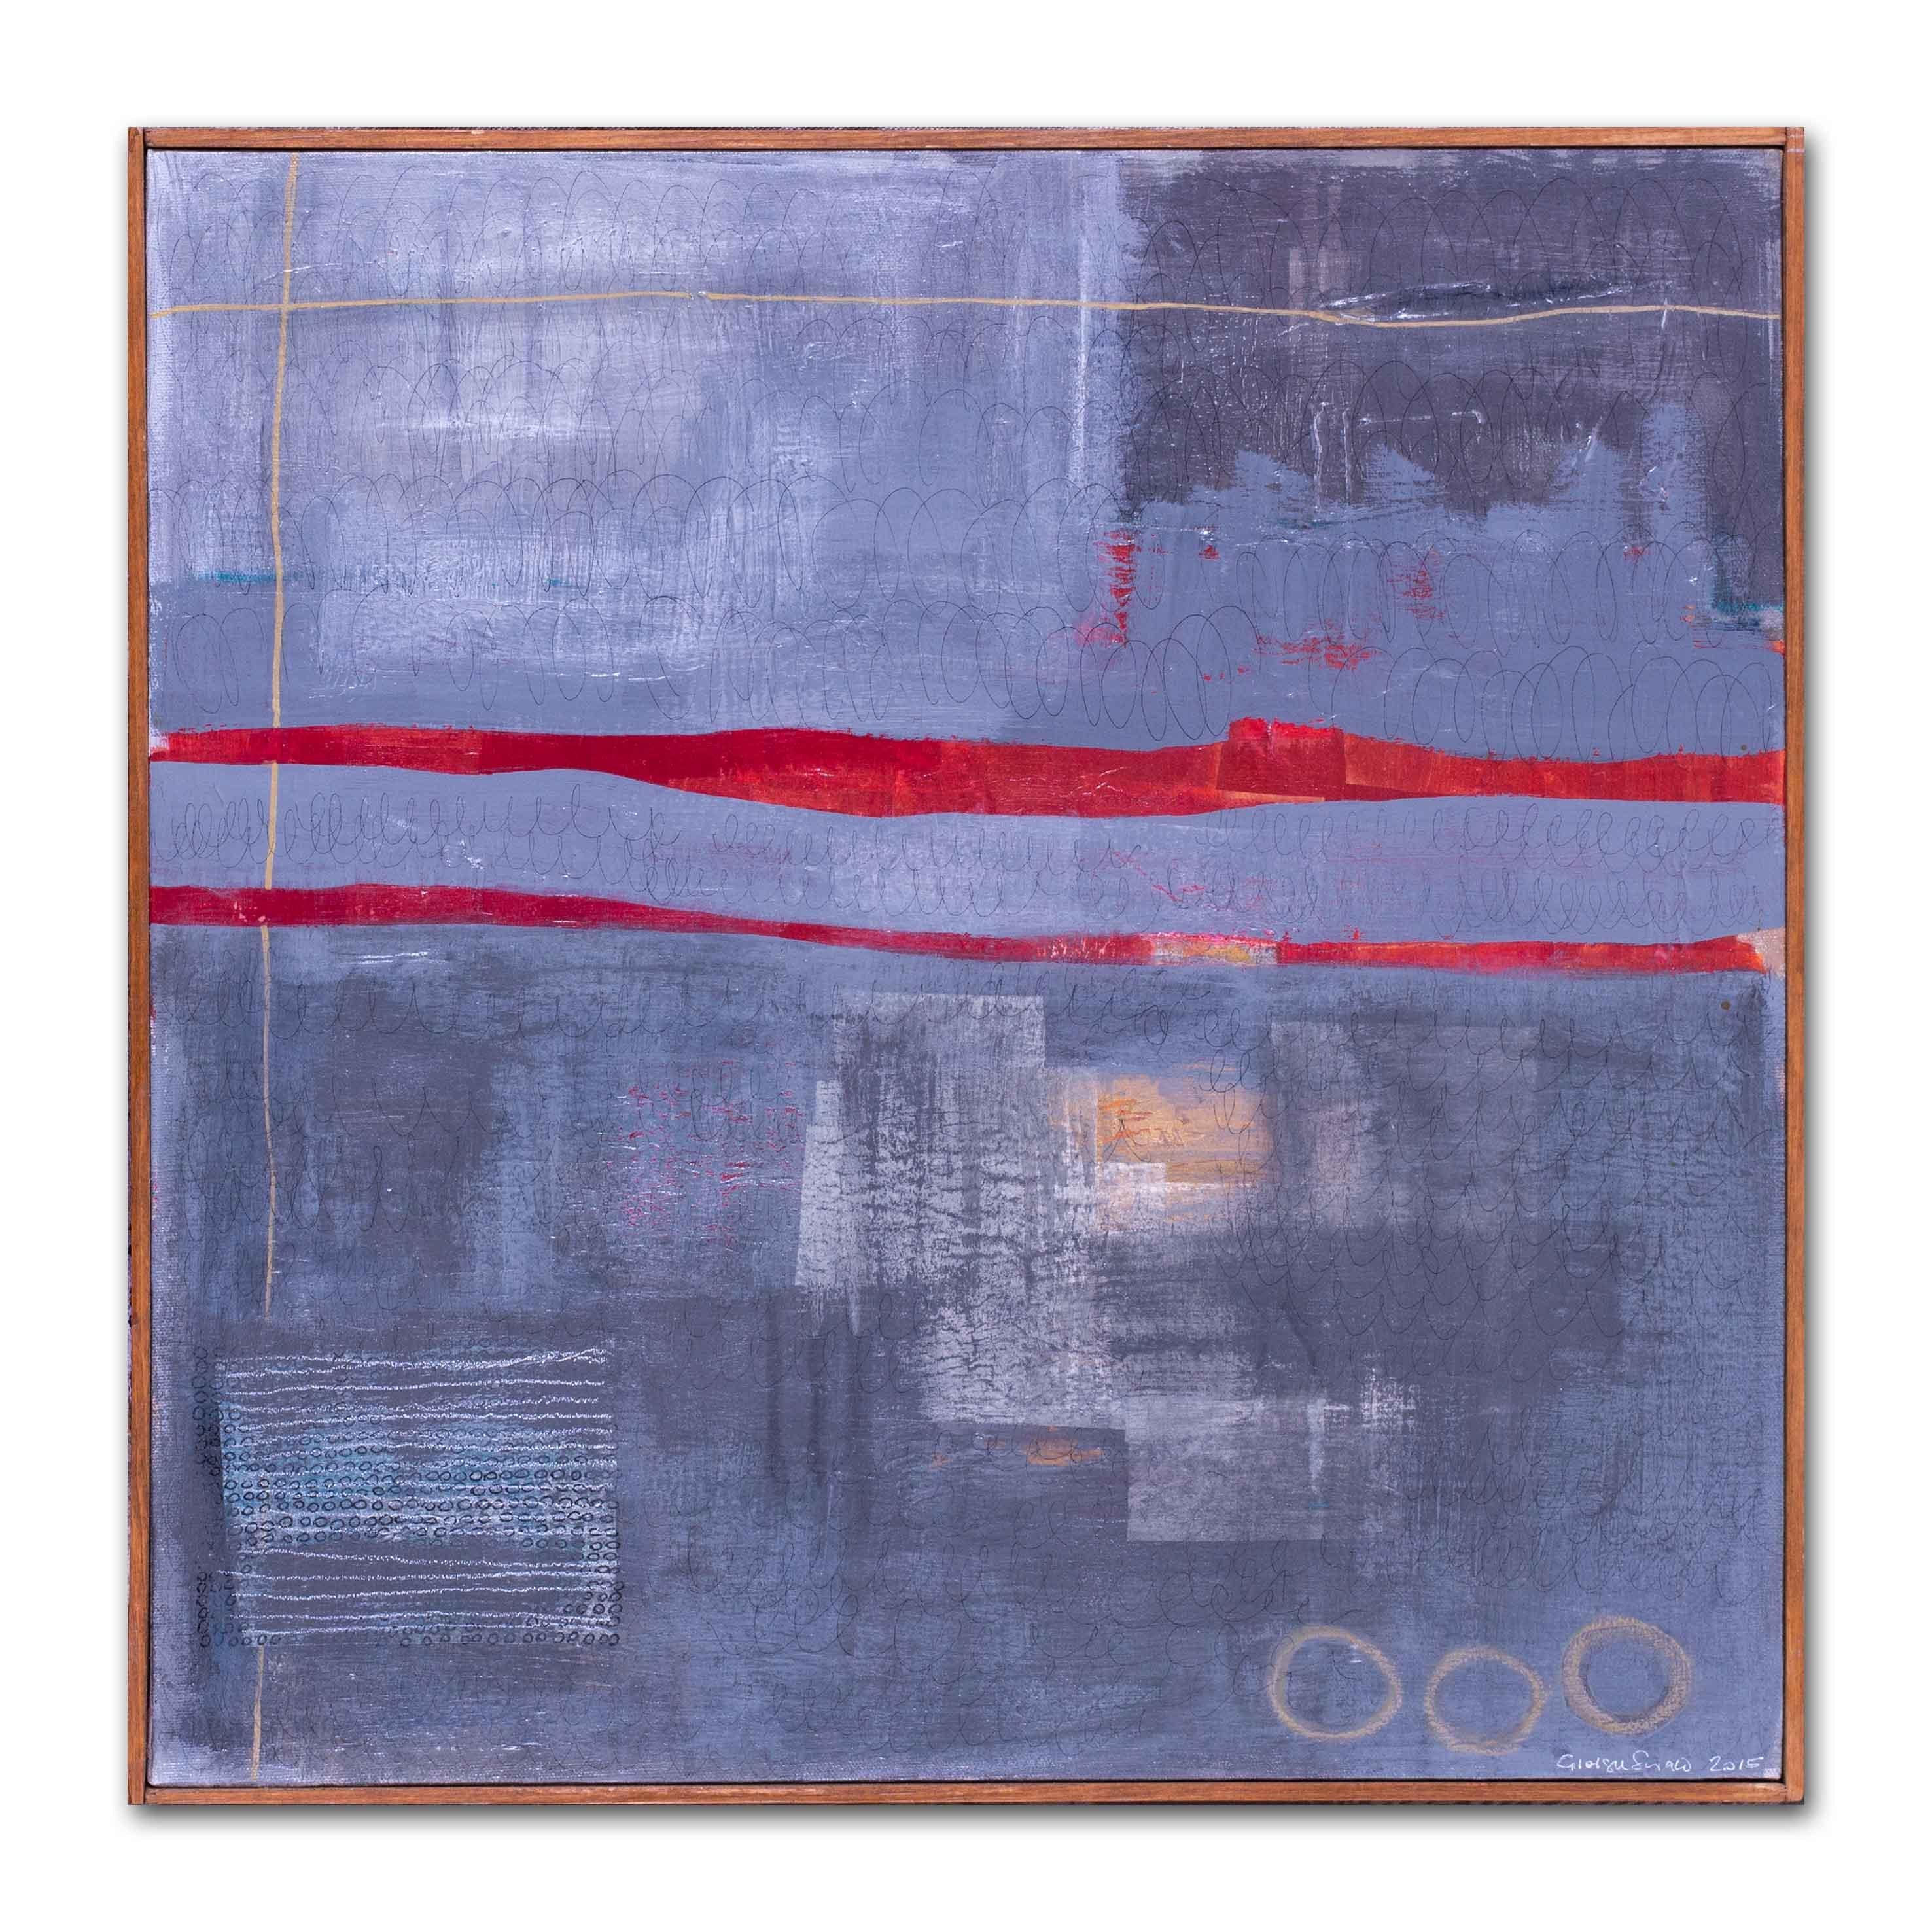 Giorgia Siriaco (Amerikanerin, 21. Jahrhundert)
Rote Linien
Acryl und Mischtechnik auf Leinwand
Signiert und datiert "Giorgia Siriaco 2015" (unten rechts)
20,1/2 x 20,1/2 Zoll (52 x 52 cm.)
